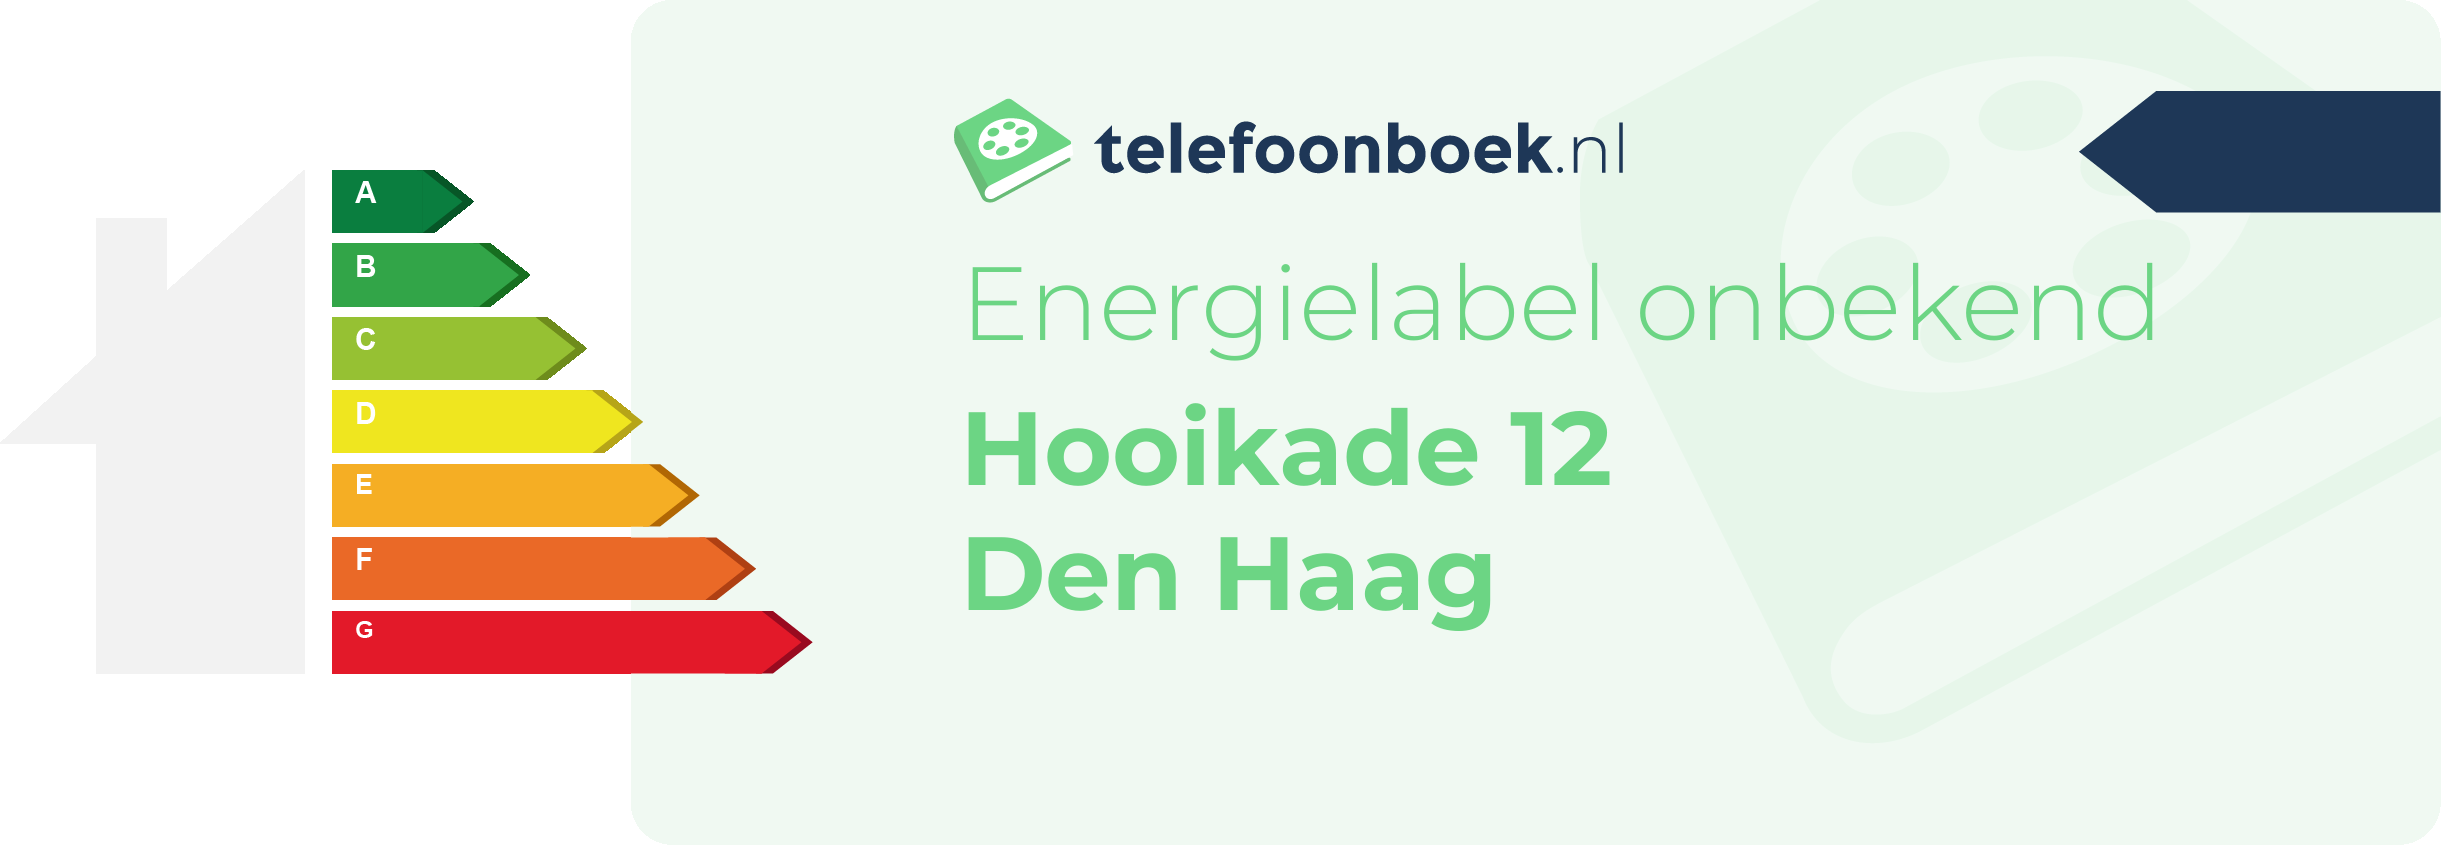 Energielabel Hooikade 12 Den Haag